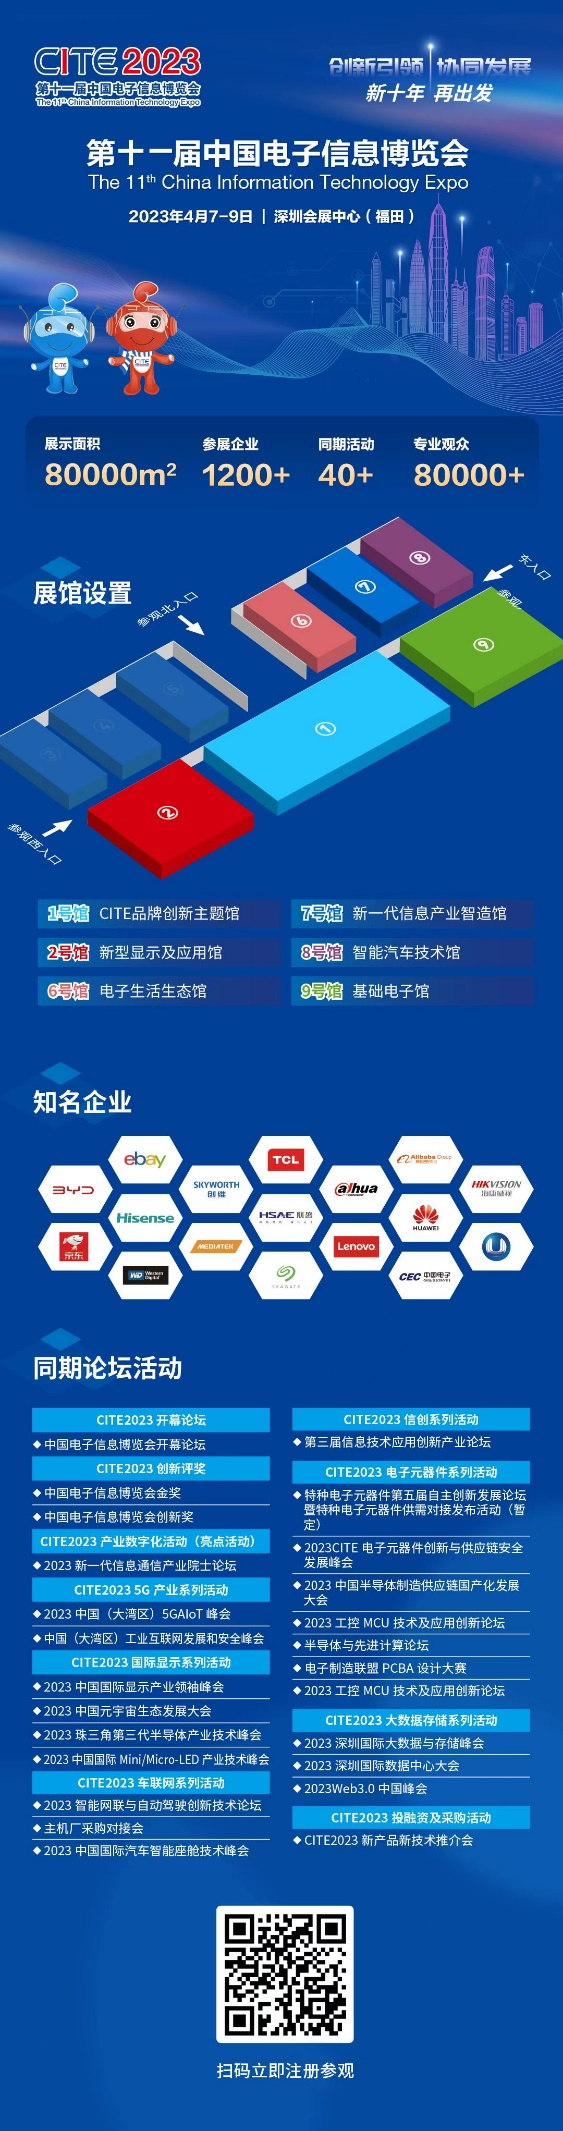 上海芯思维——助力中国集成电路产业发展